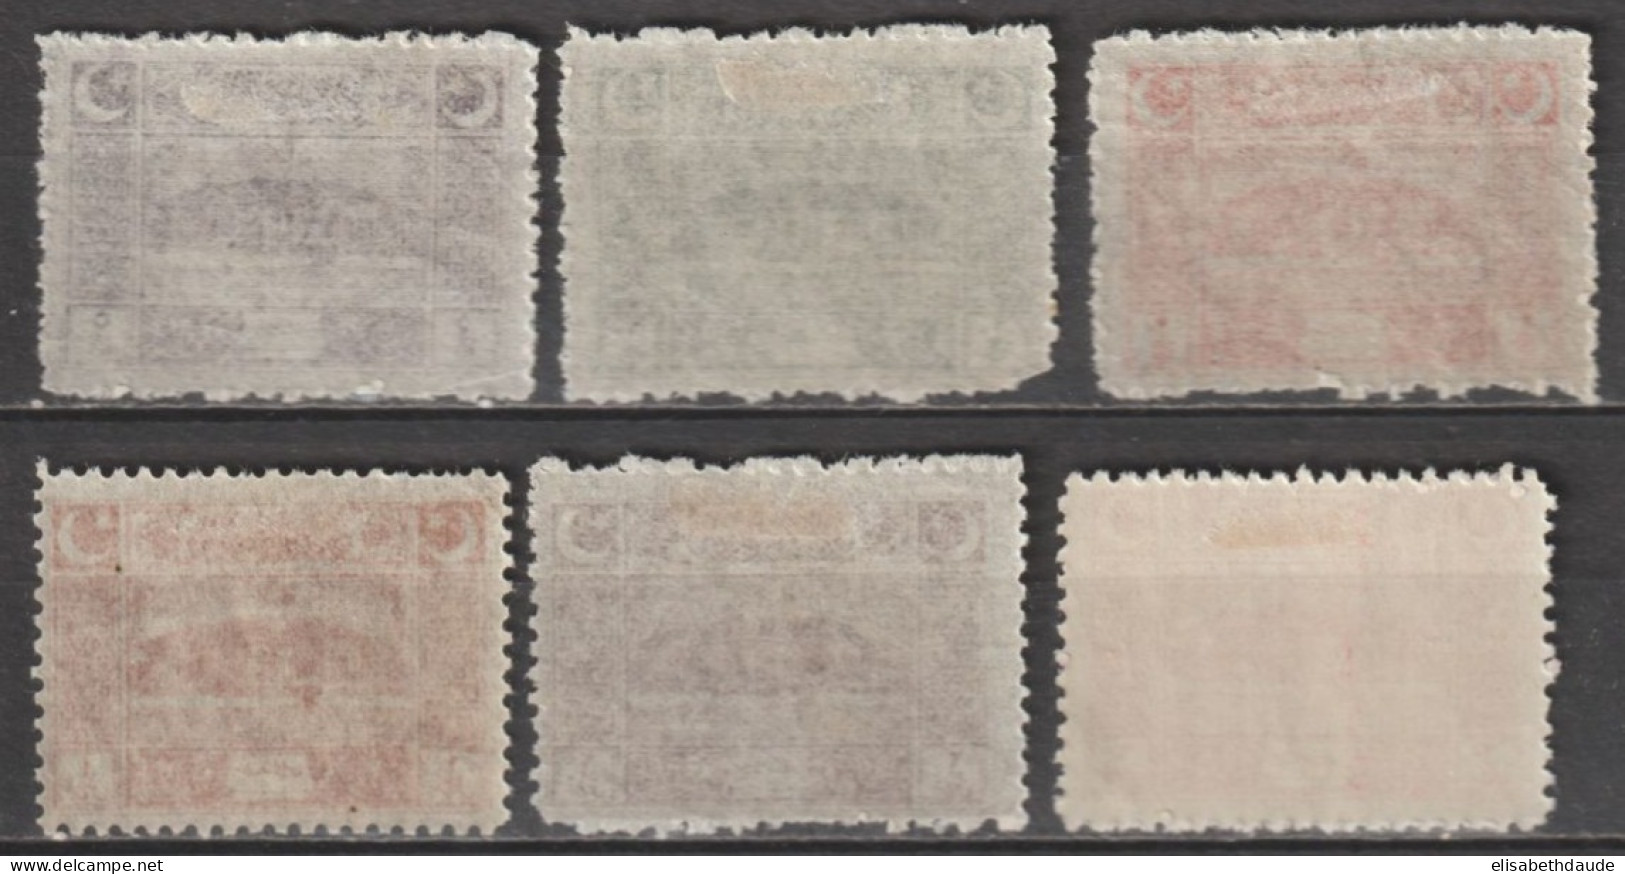 1923 - TURQUIE - SERIE COMPLETE YVERT N°662/667 * MLH - COTE = 50 EUR - Unused Stamps